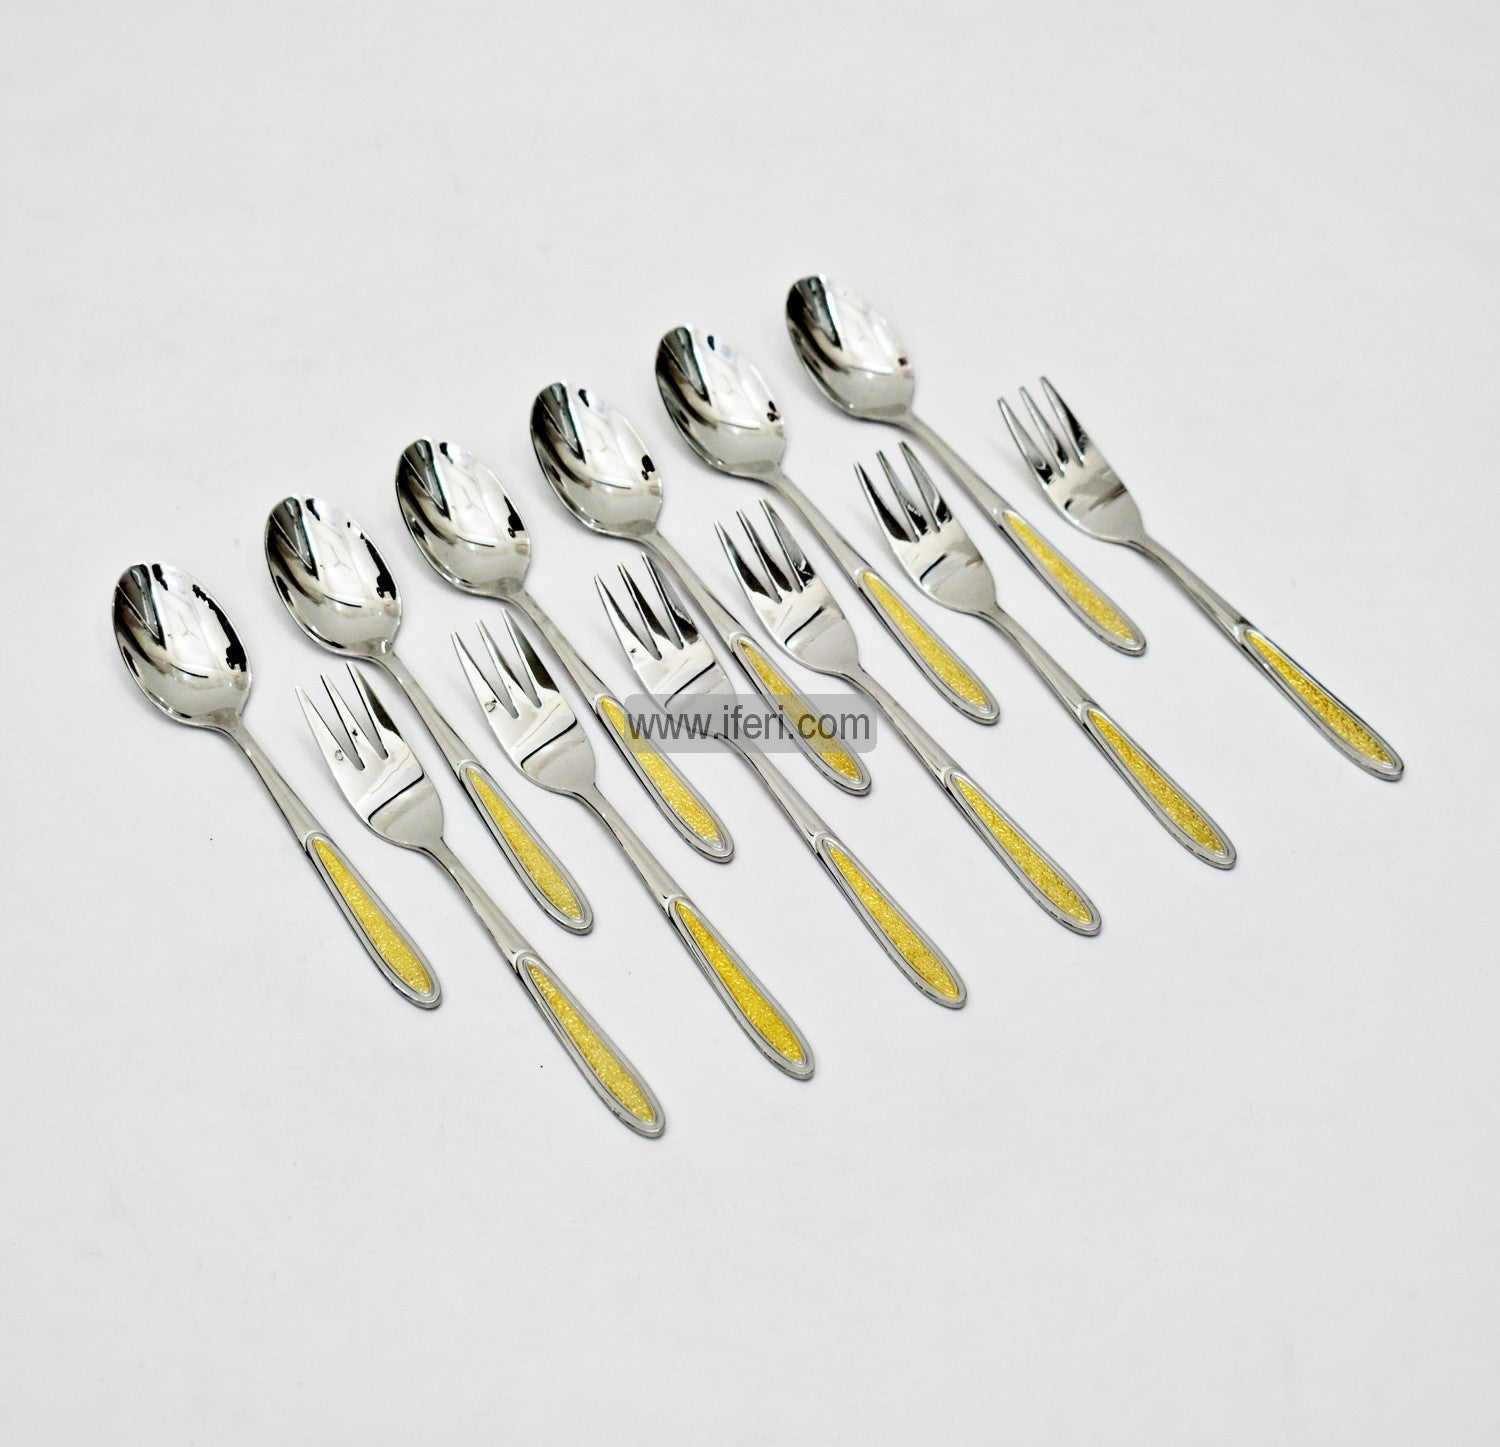 12 Pcs Stainless Steel Tea Spoon & Fork Set EB21195